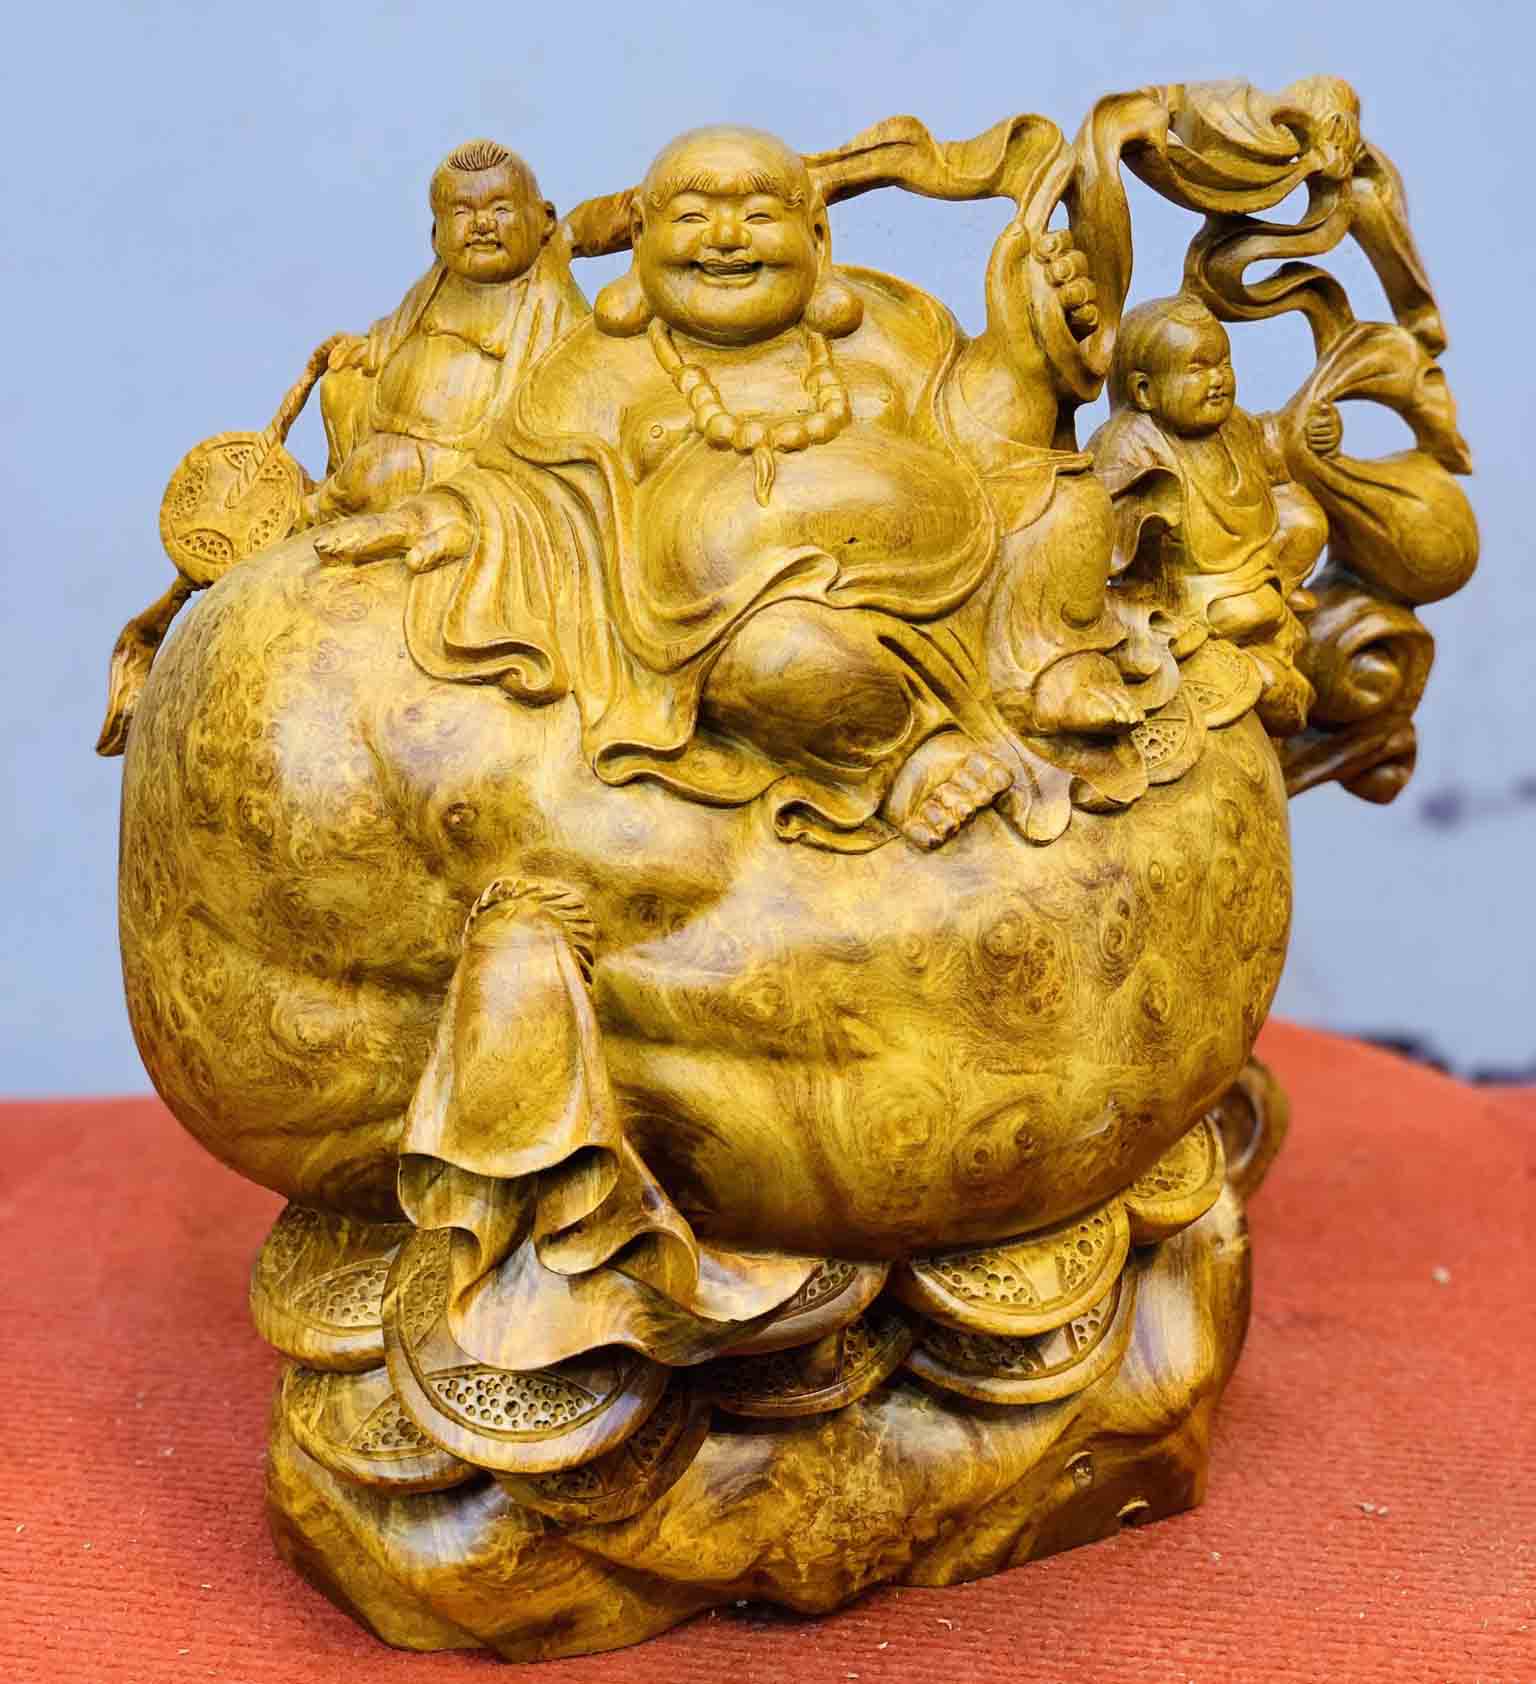 Gỗ nu nghiến được ưu chuộng sử dụng làm tượng Phật Di Lặc vì nó mang đến nhiều ưu điểm về chất gỗ và tính thẩm mỹ